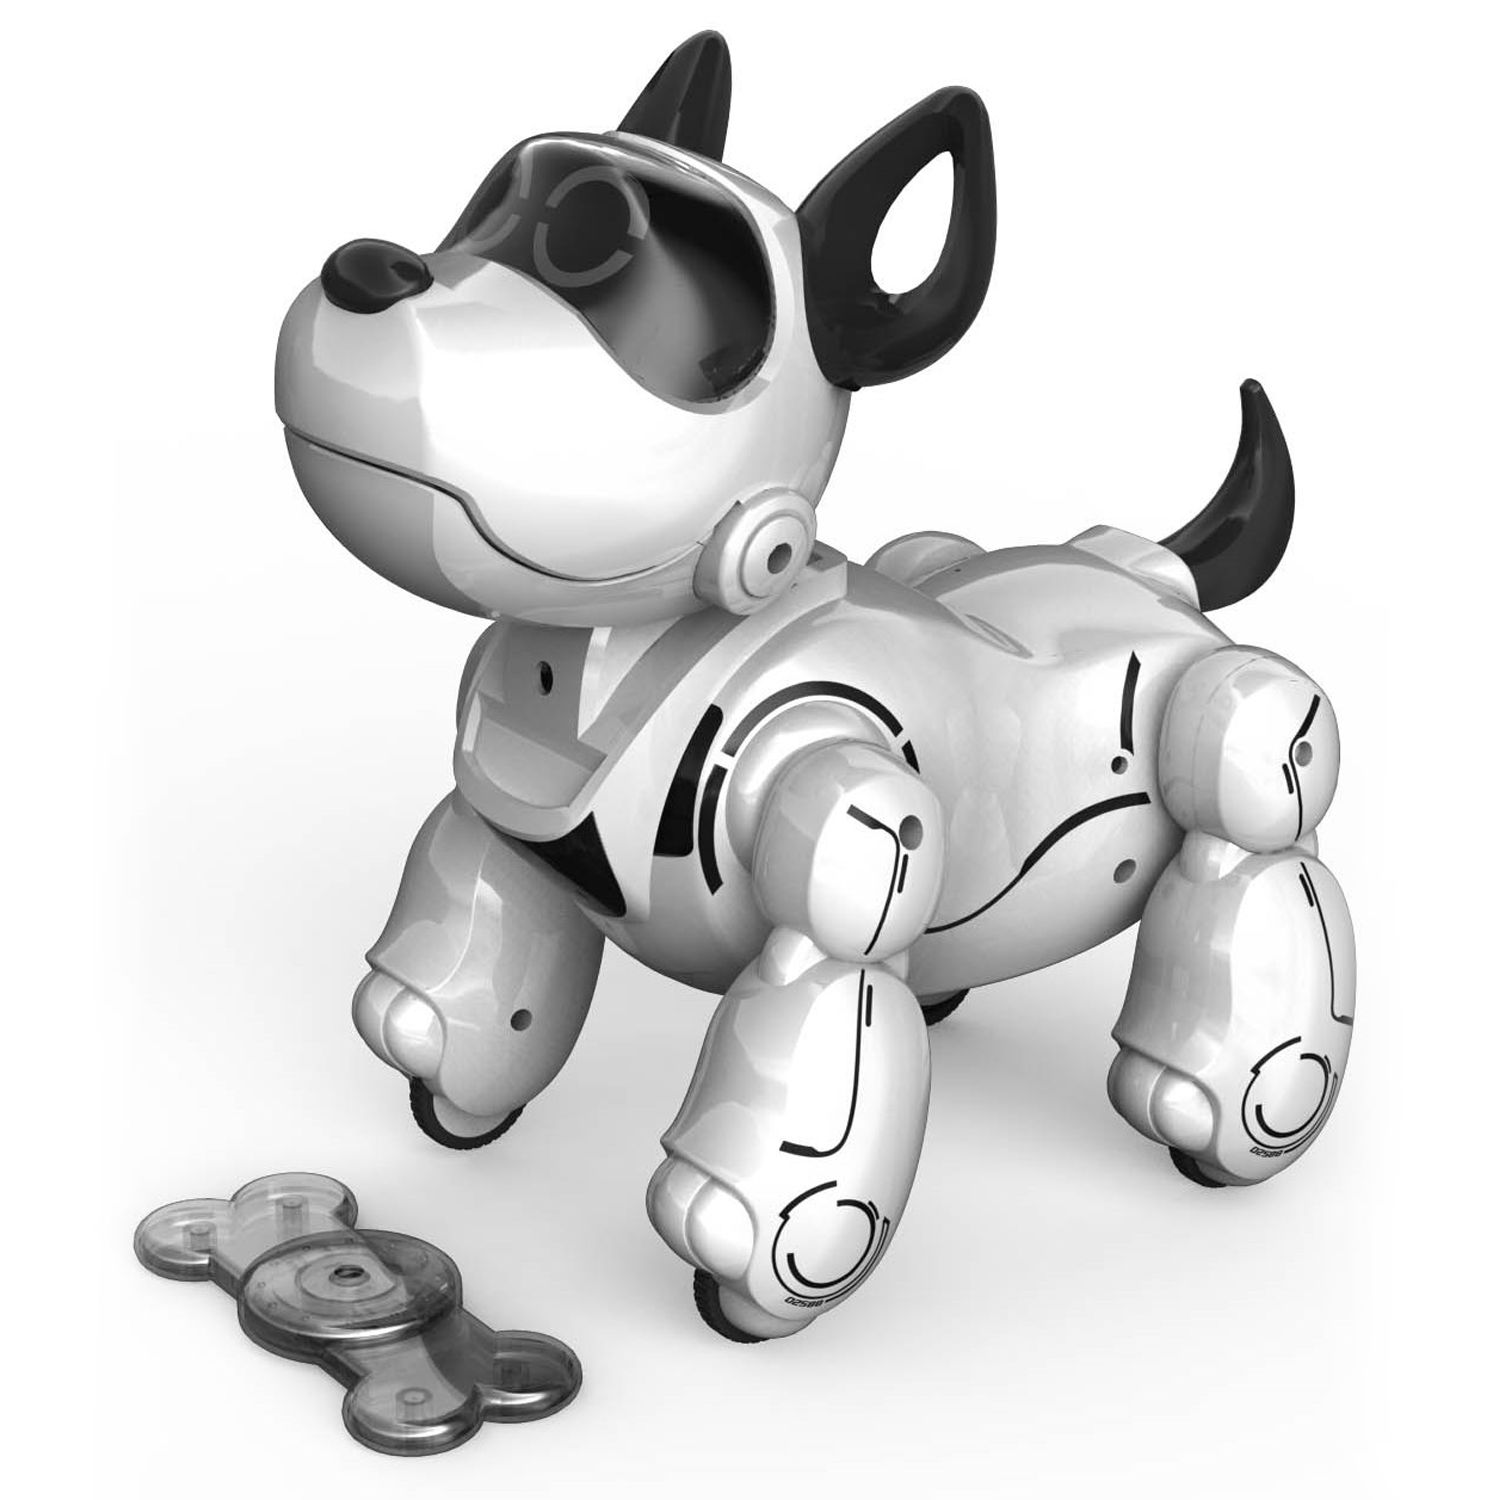 silverlit my puppy robot